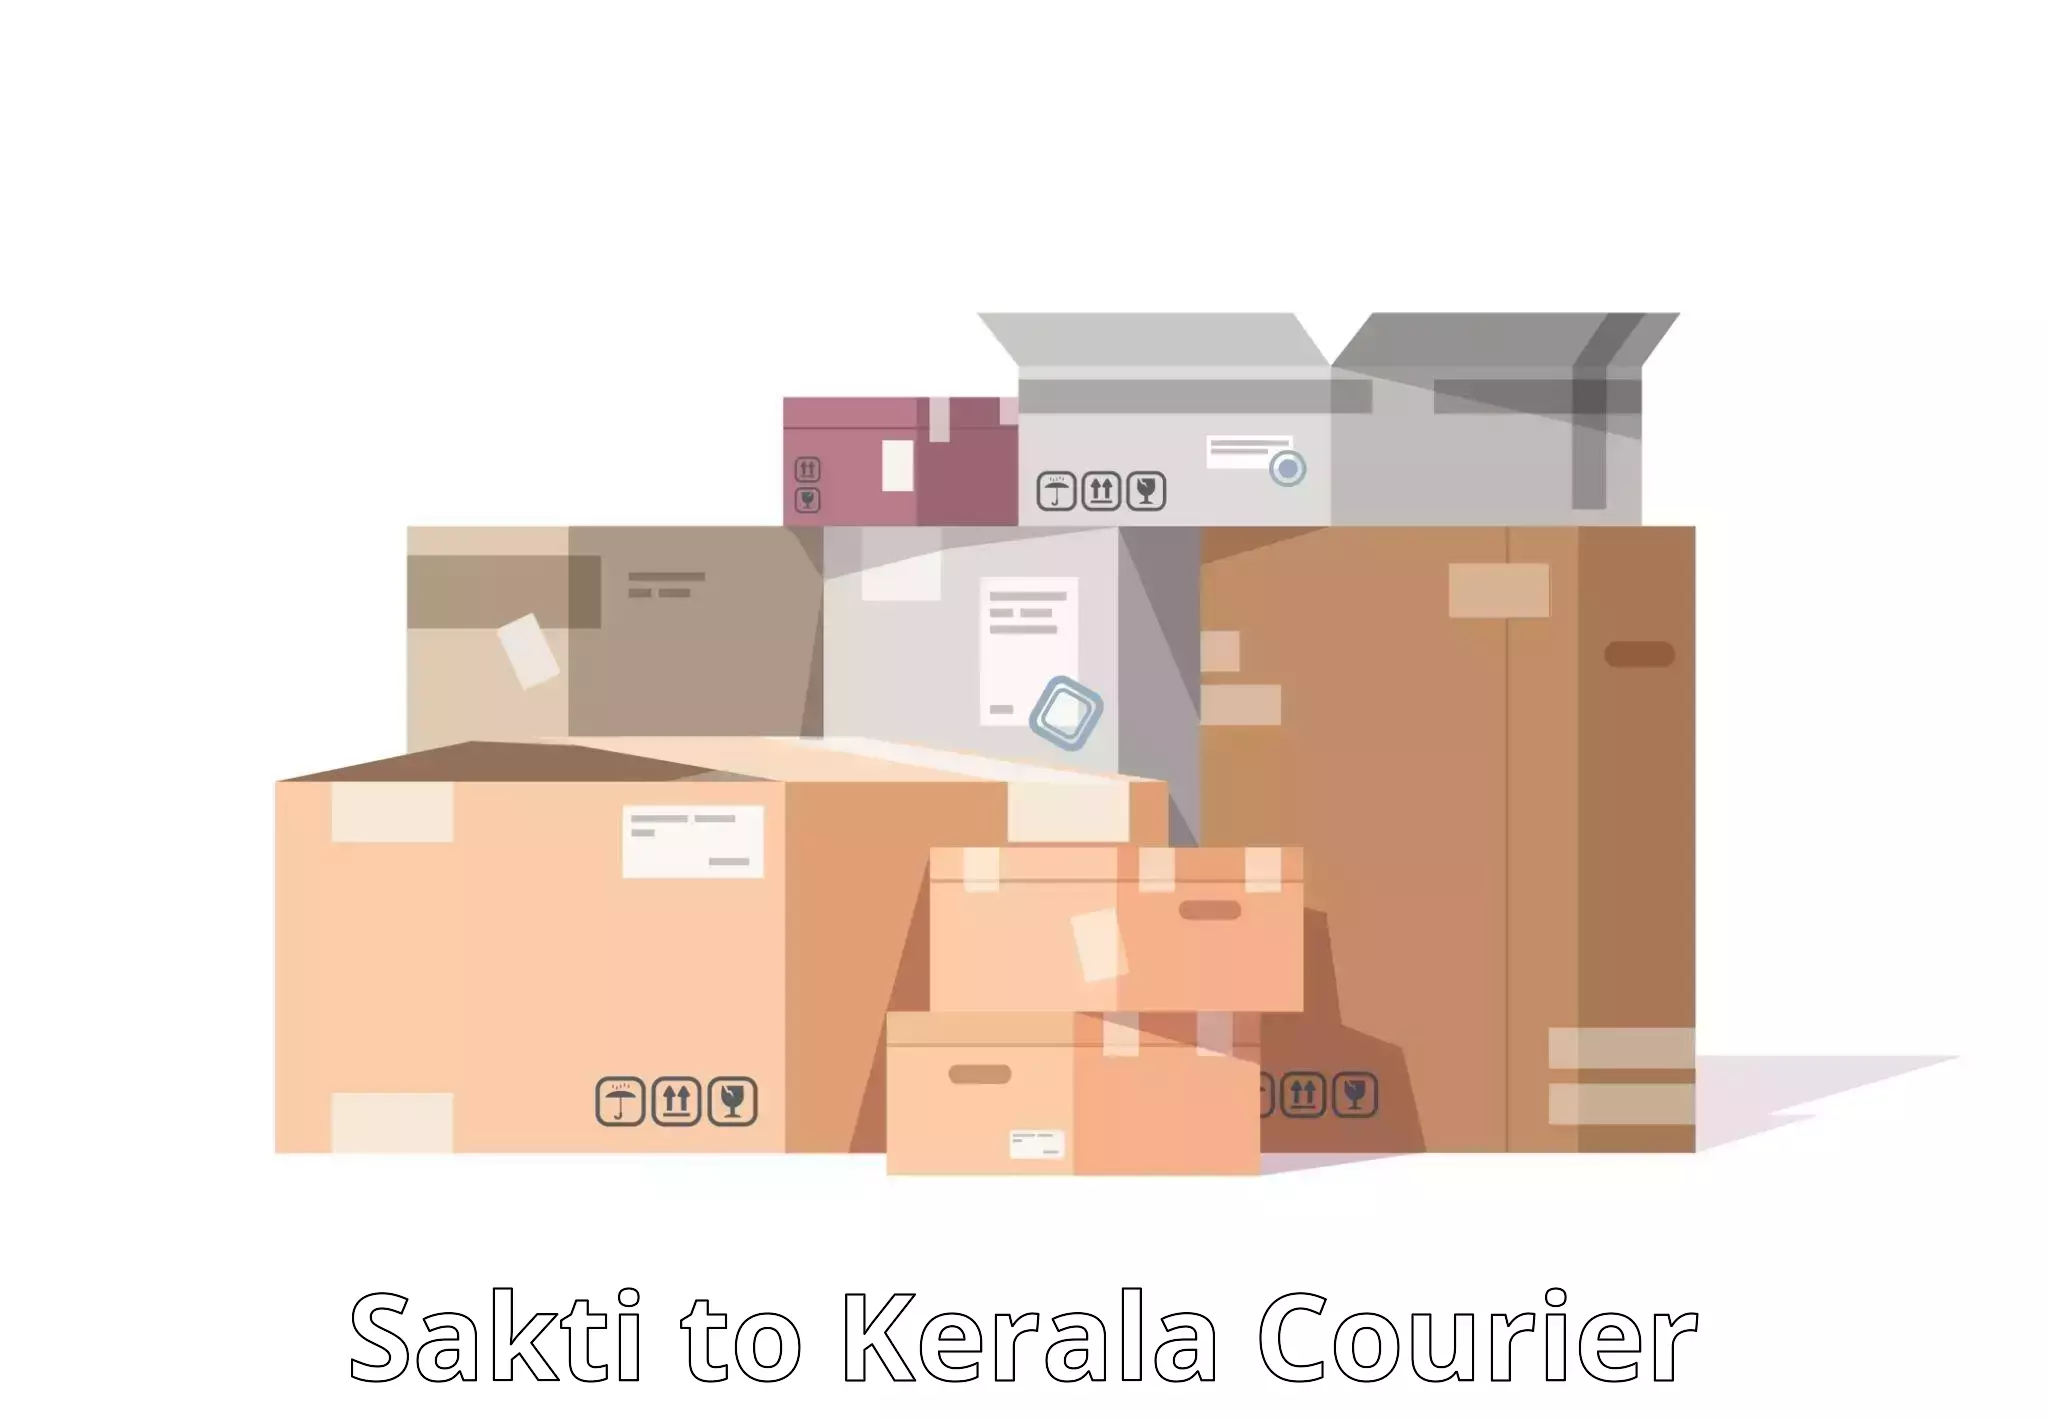 Personalized courier experiences Sakti to Kerala